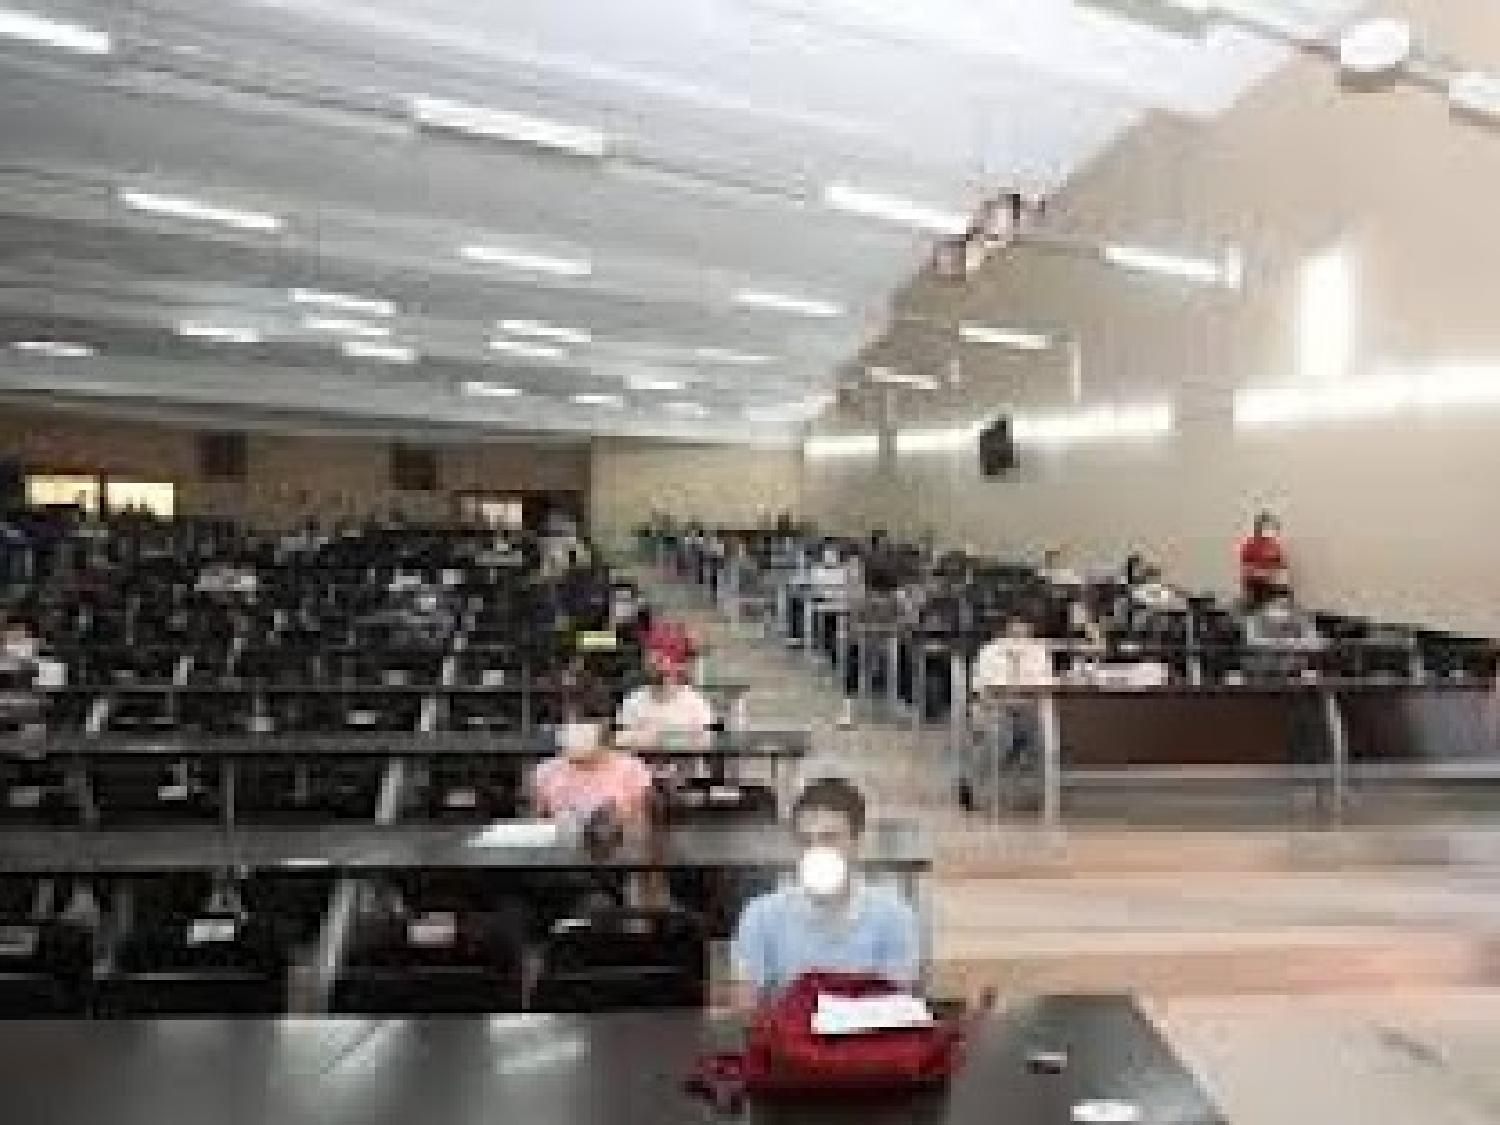 طلبة بجامعة القاضي عياض يتفاجؤون بتسجيلهم غائبين عن الامتحانات رغم اجتيازها